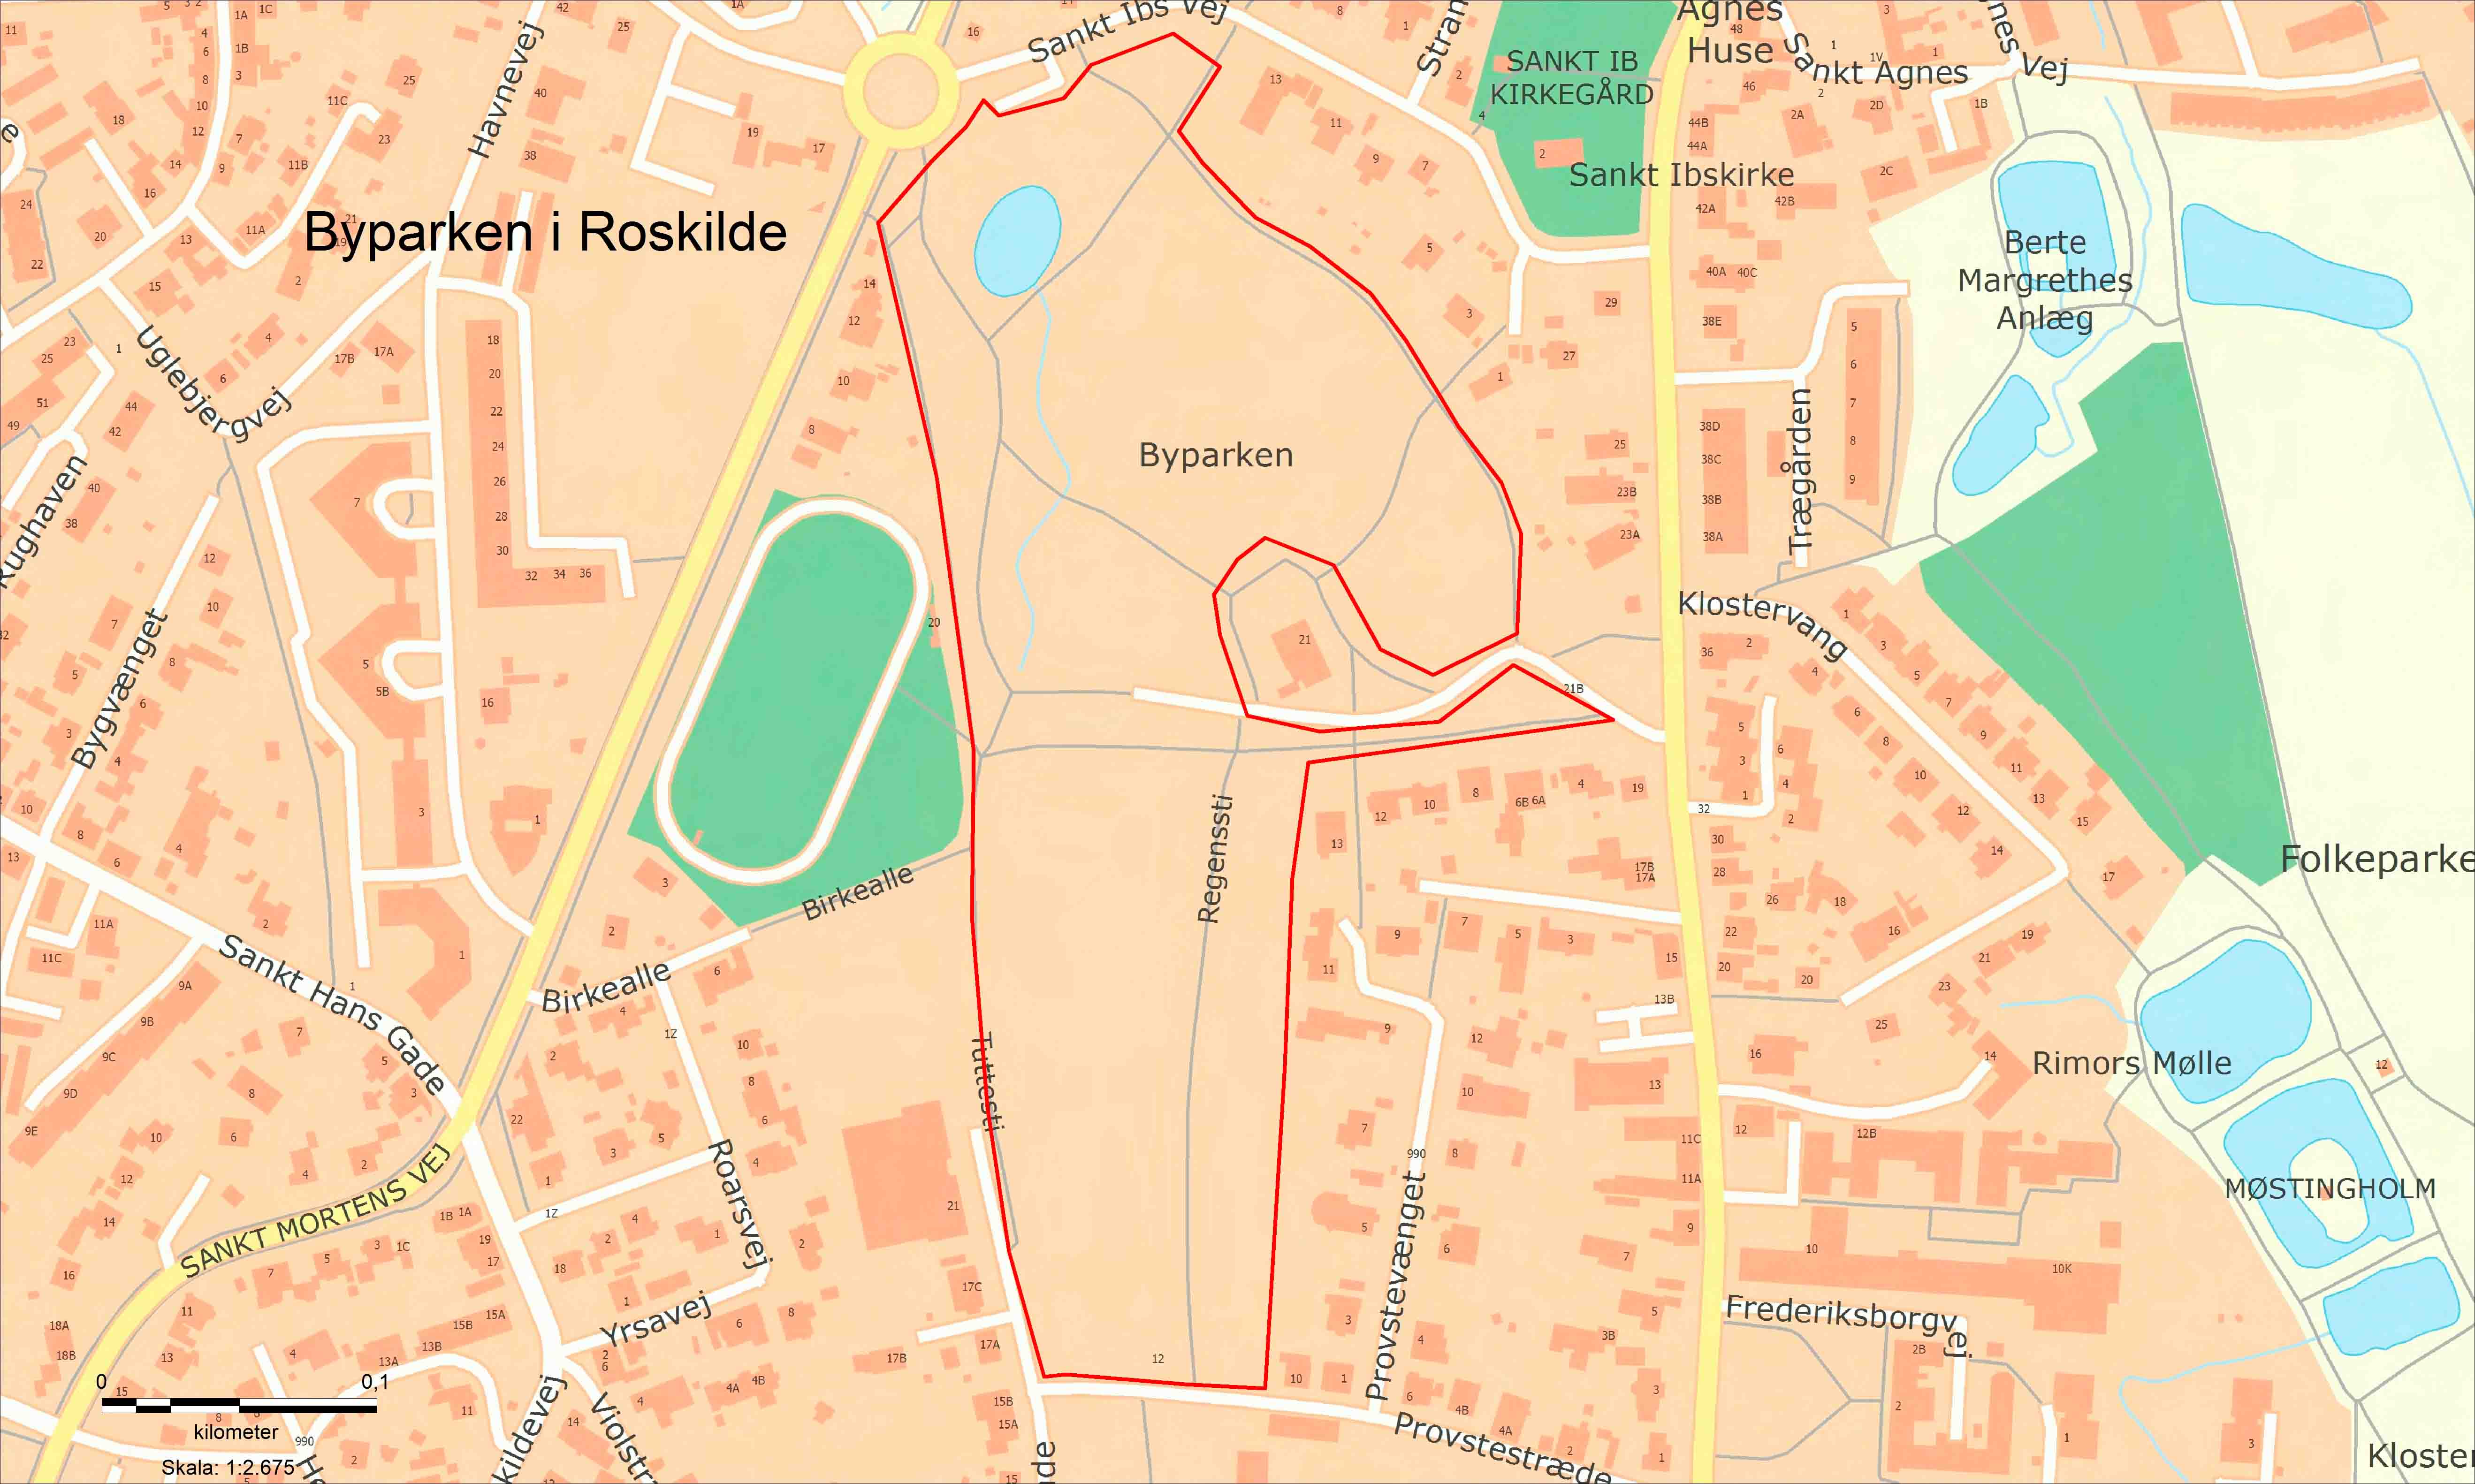 Opholdsforbud Byparken i Roskilde